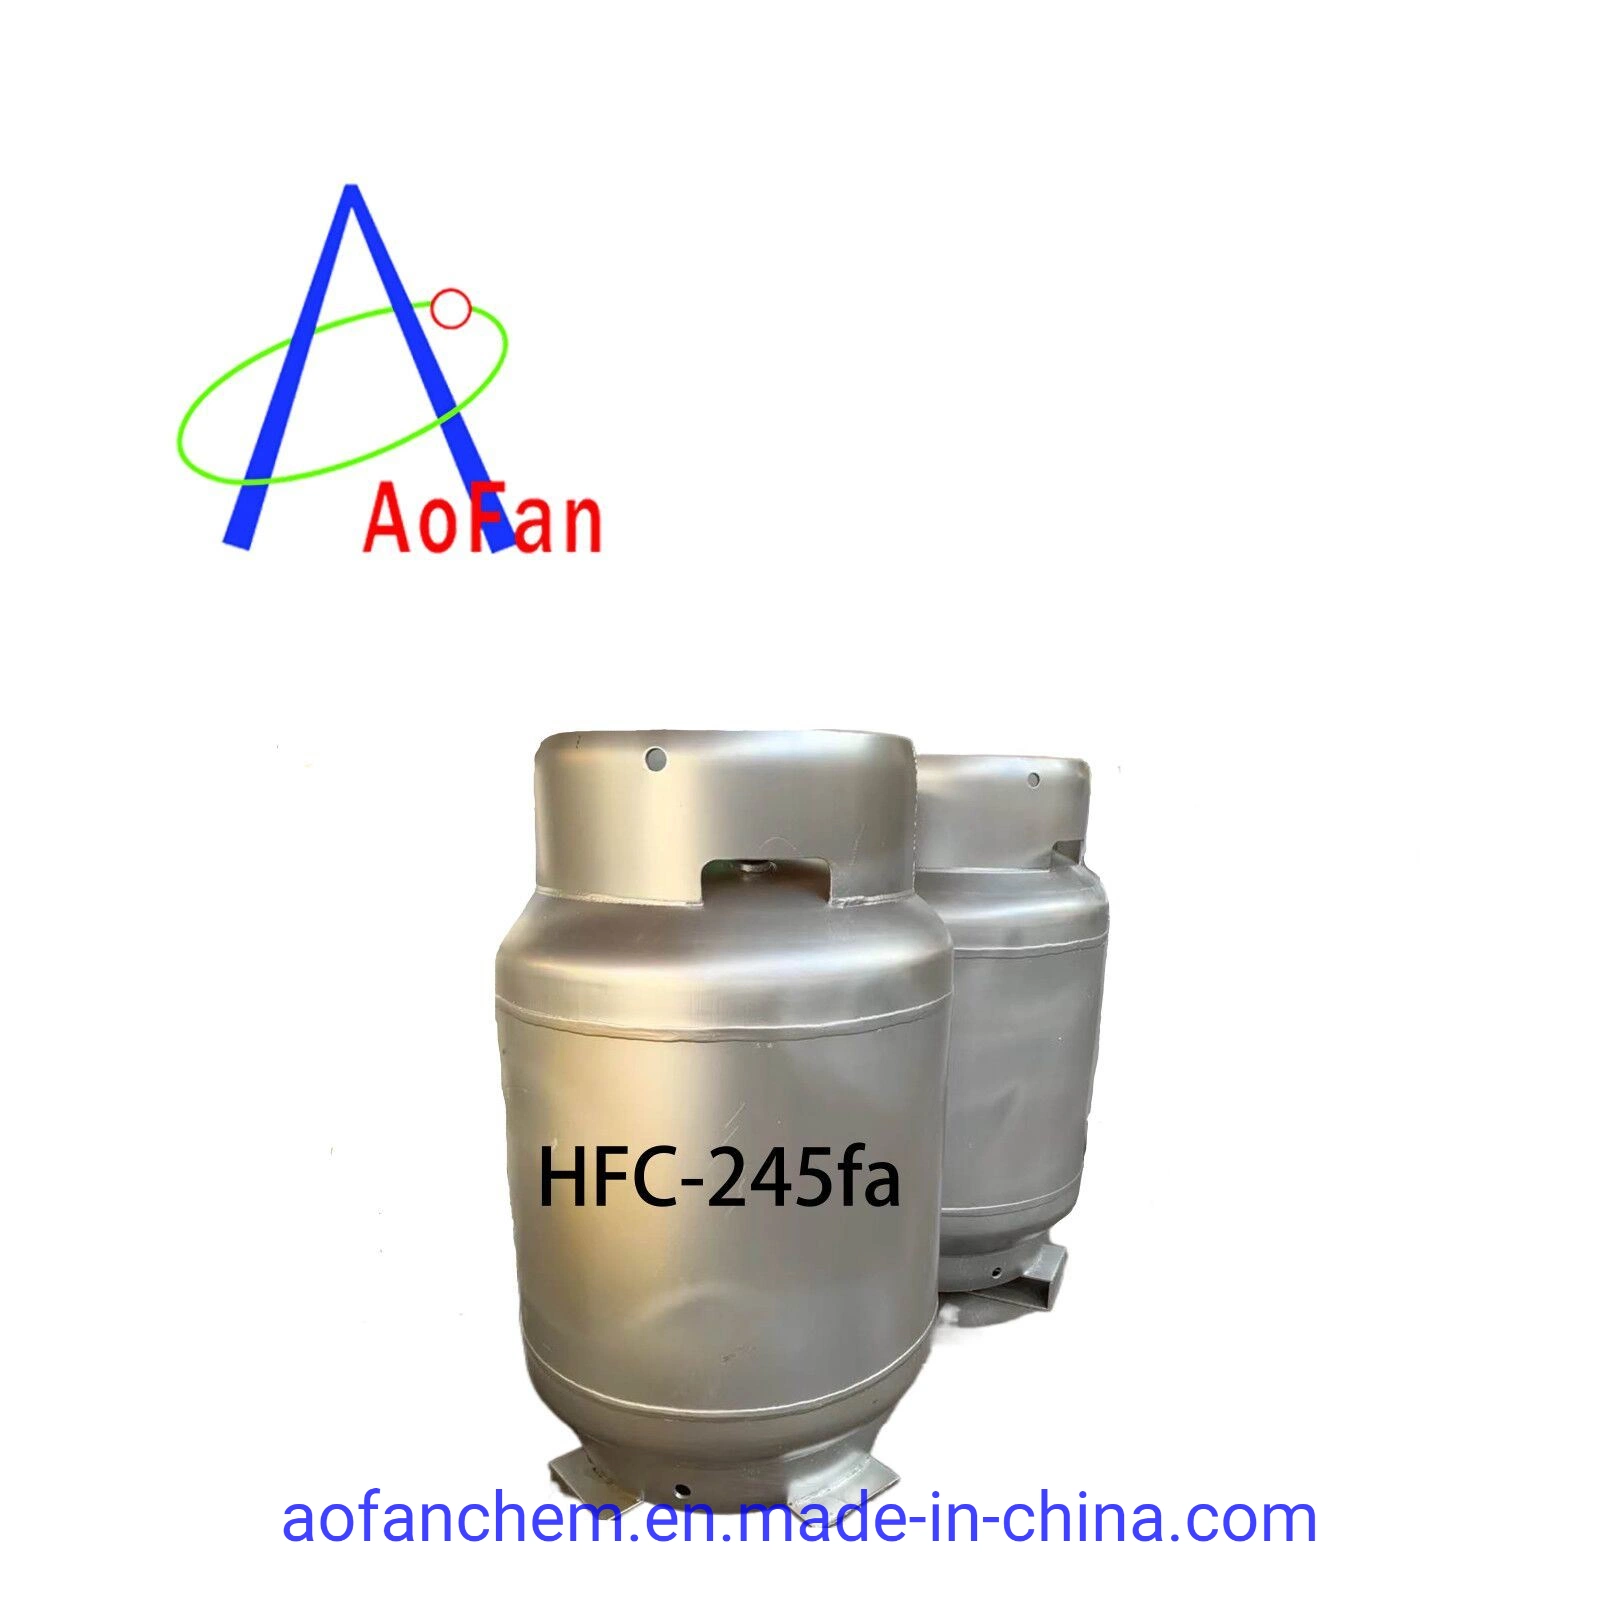 precio de Originales de fábrica de refrigerante de flúor fabricante chino de China, el HFC-245fa